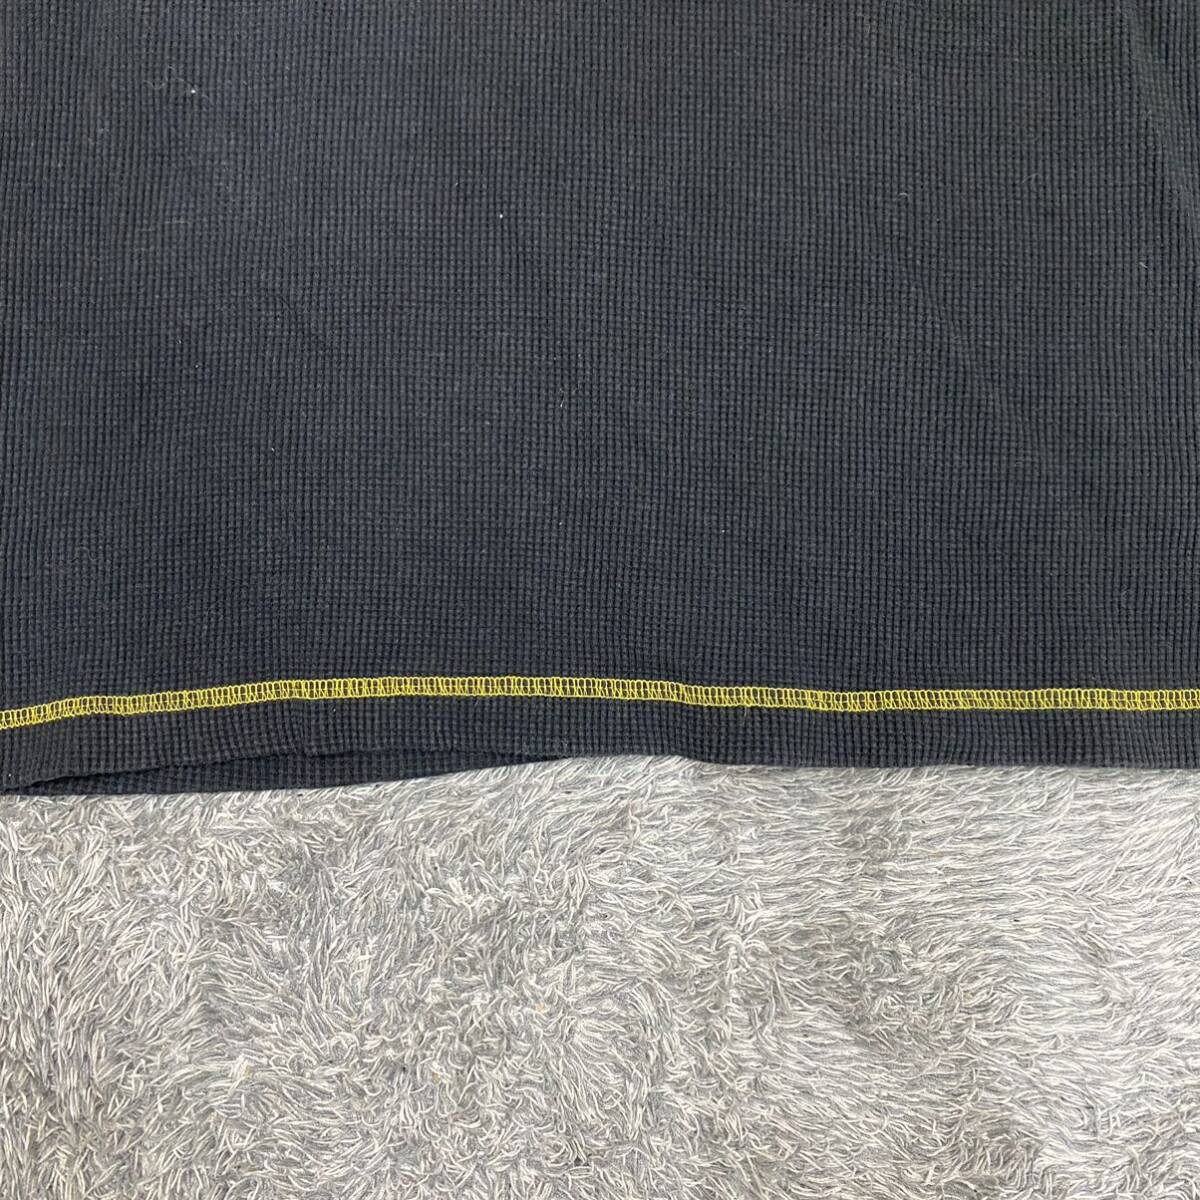 NORTON ノートン Tシャツ 半袖カットソー サーマル ワッフル サイズXL ブラック 黒 メンズ トップス 最落なし （B19）の画像4